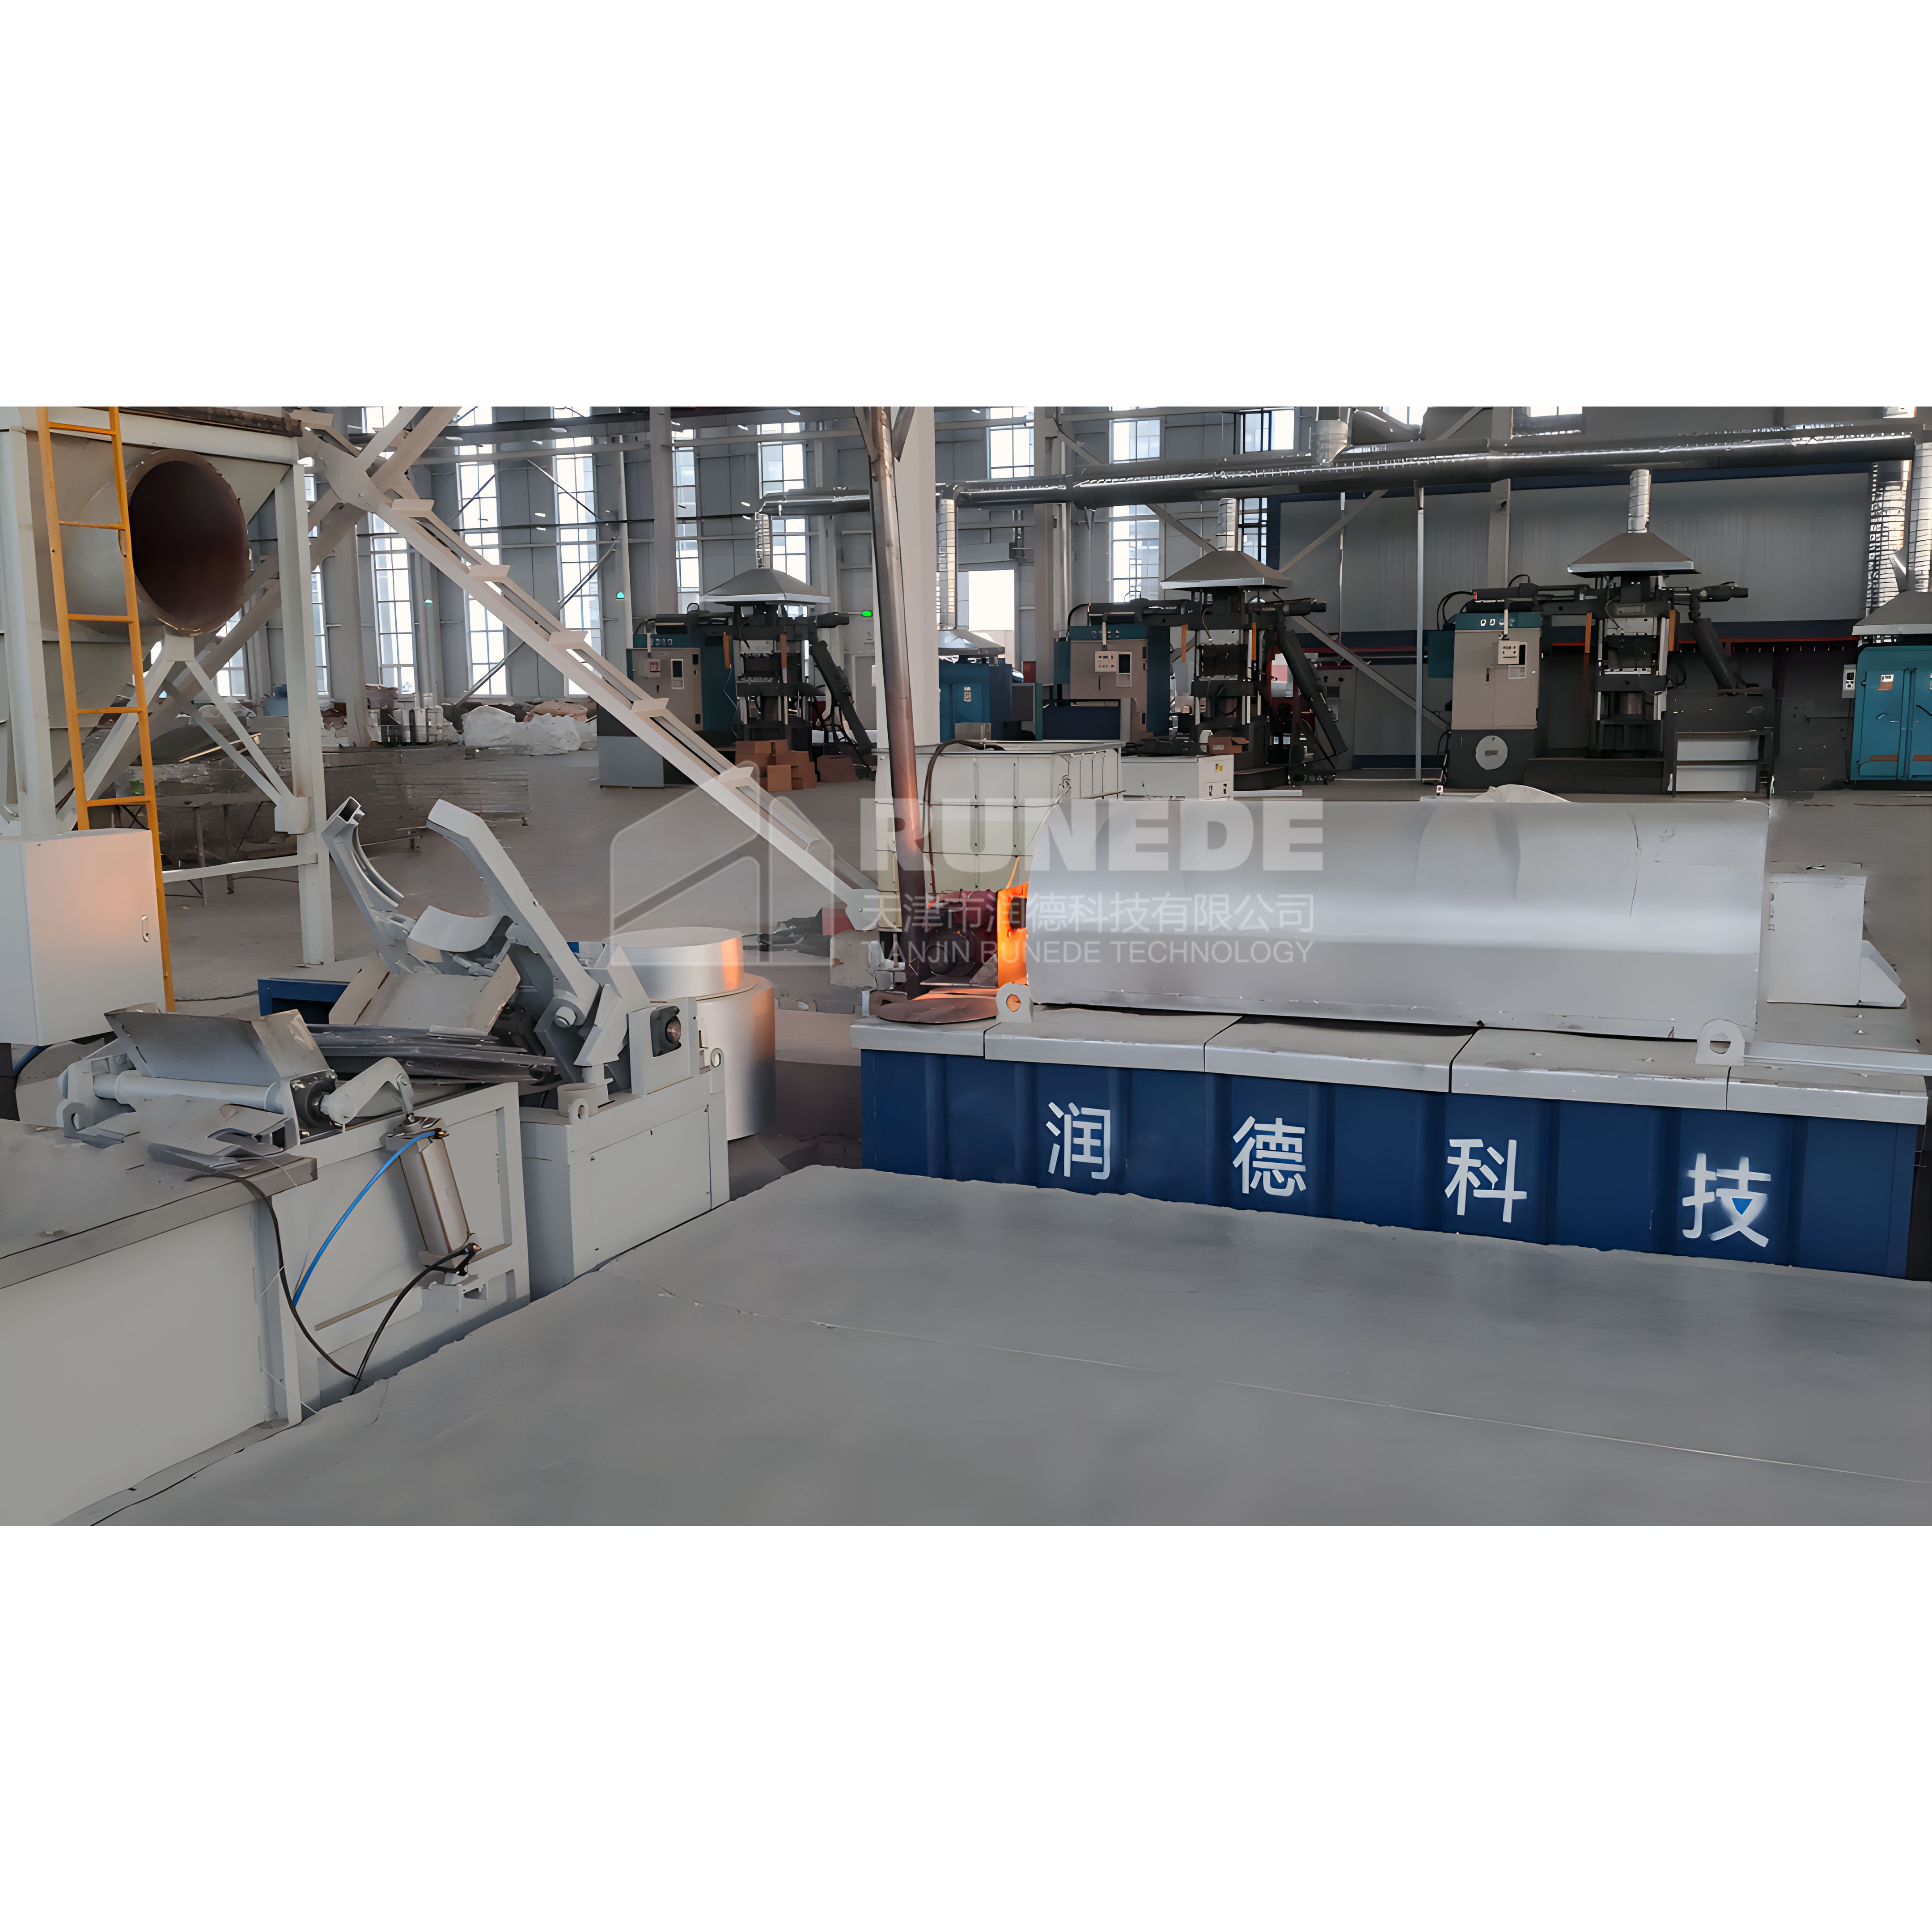 High temperature galvanizing production line